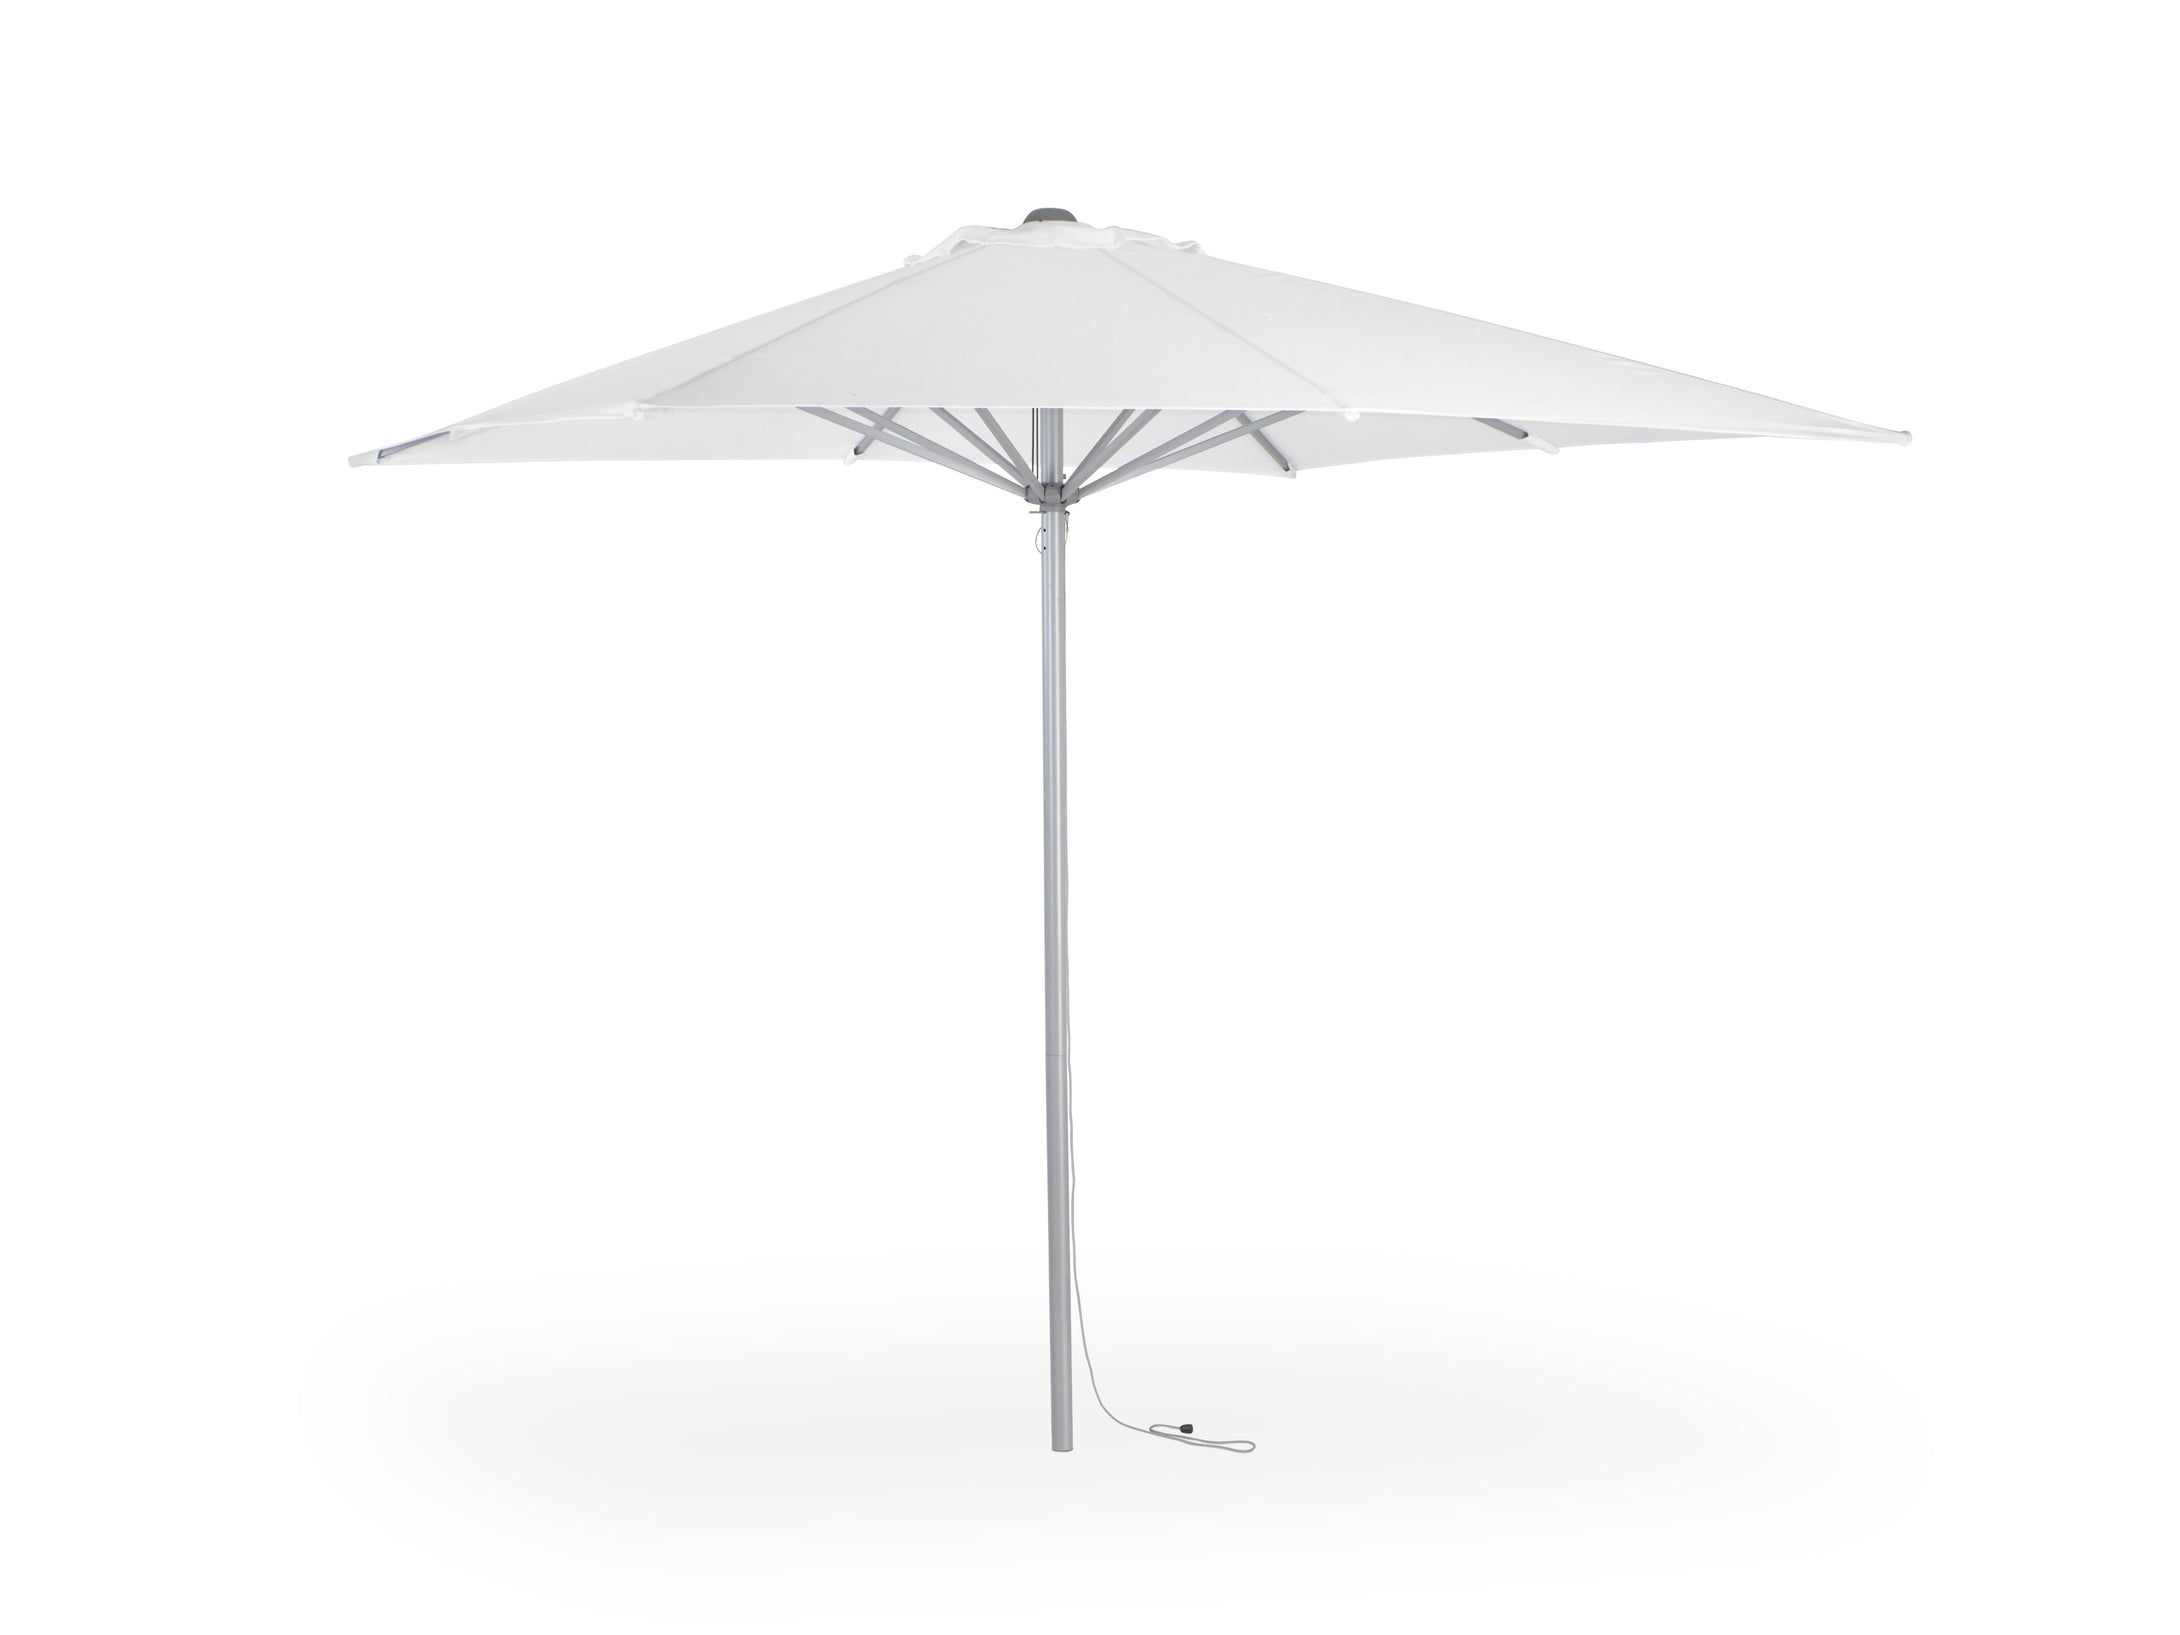 Air Sonnenschirm von Moree; Rahmen und Gestell aus Aluminium, Bespannung aus wasserbeständigem, weißem Olefin 190 gr, mit Zugloch.